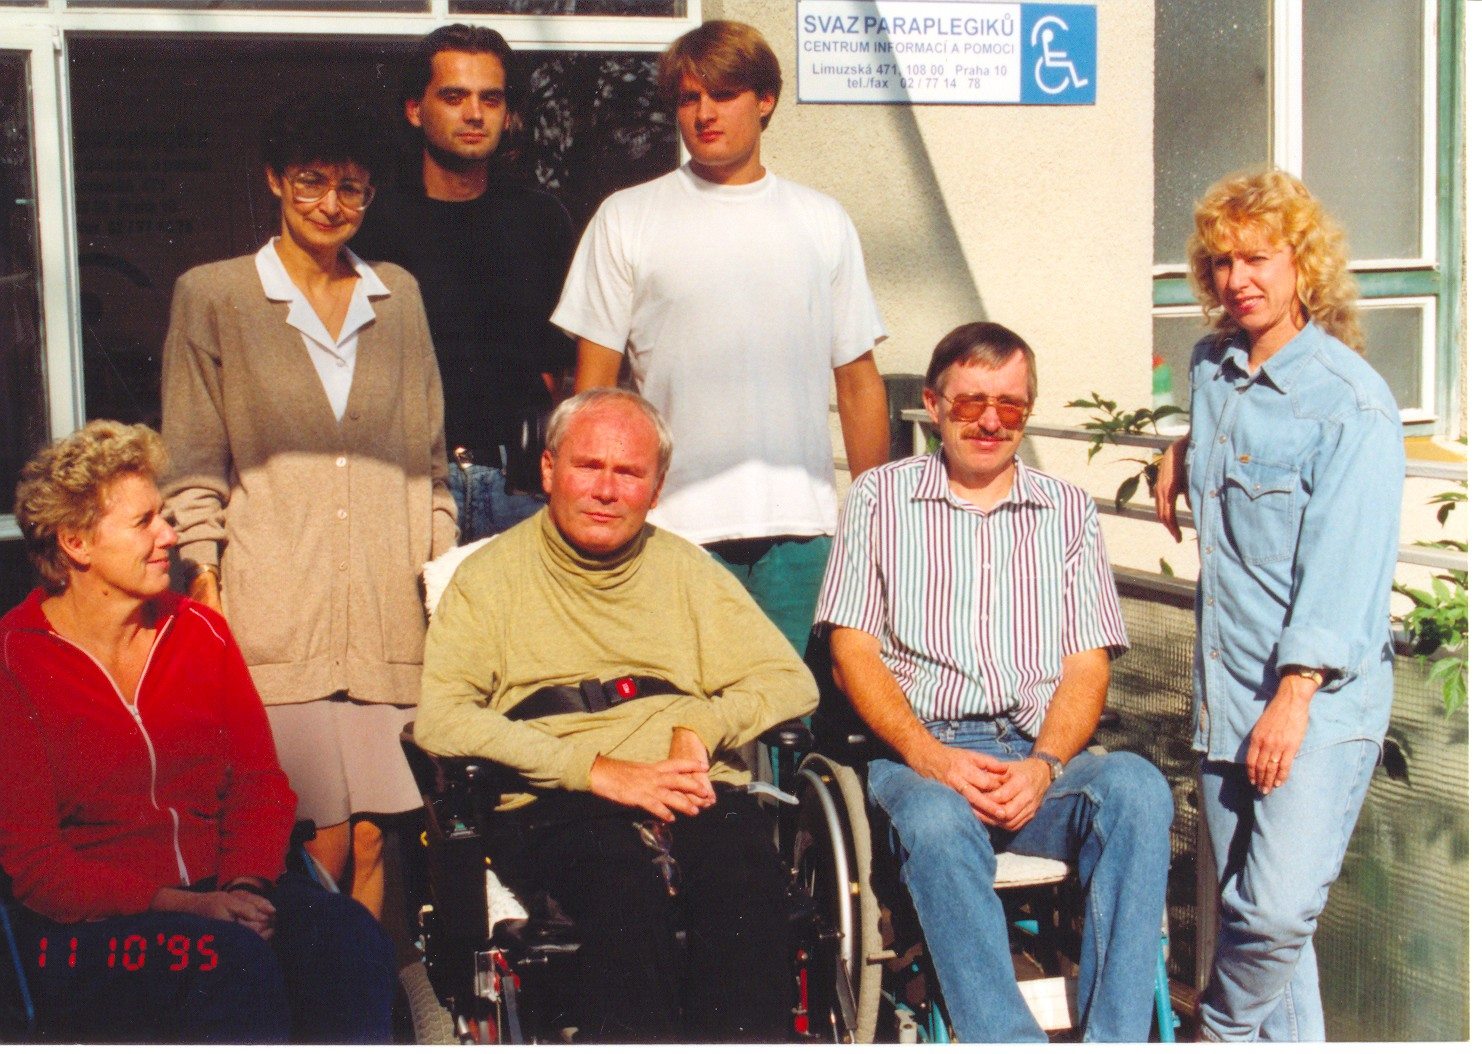 skupinová fotografie Svazu Paraplegiků z roku 1995